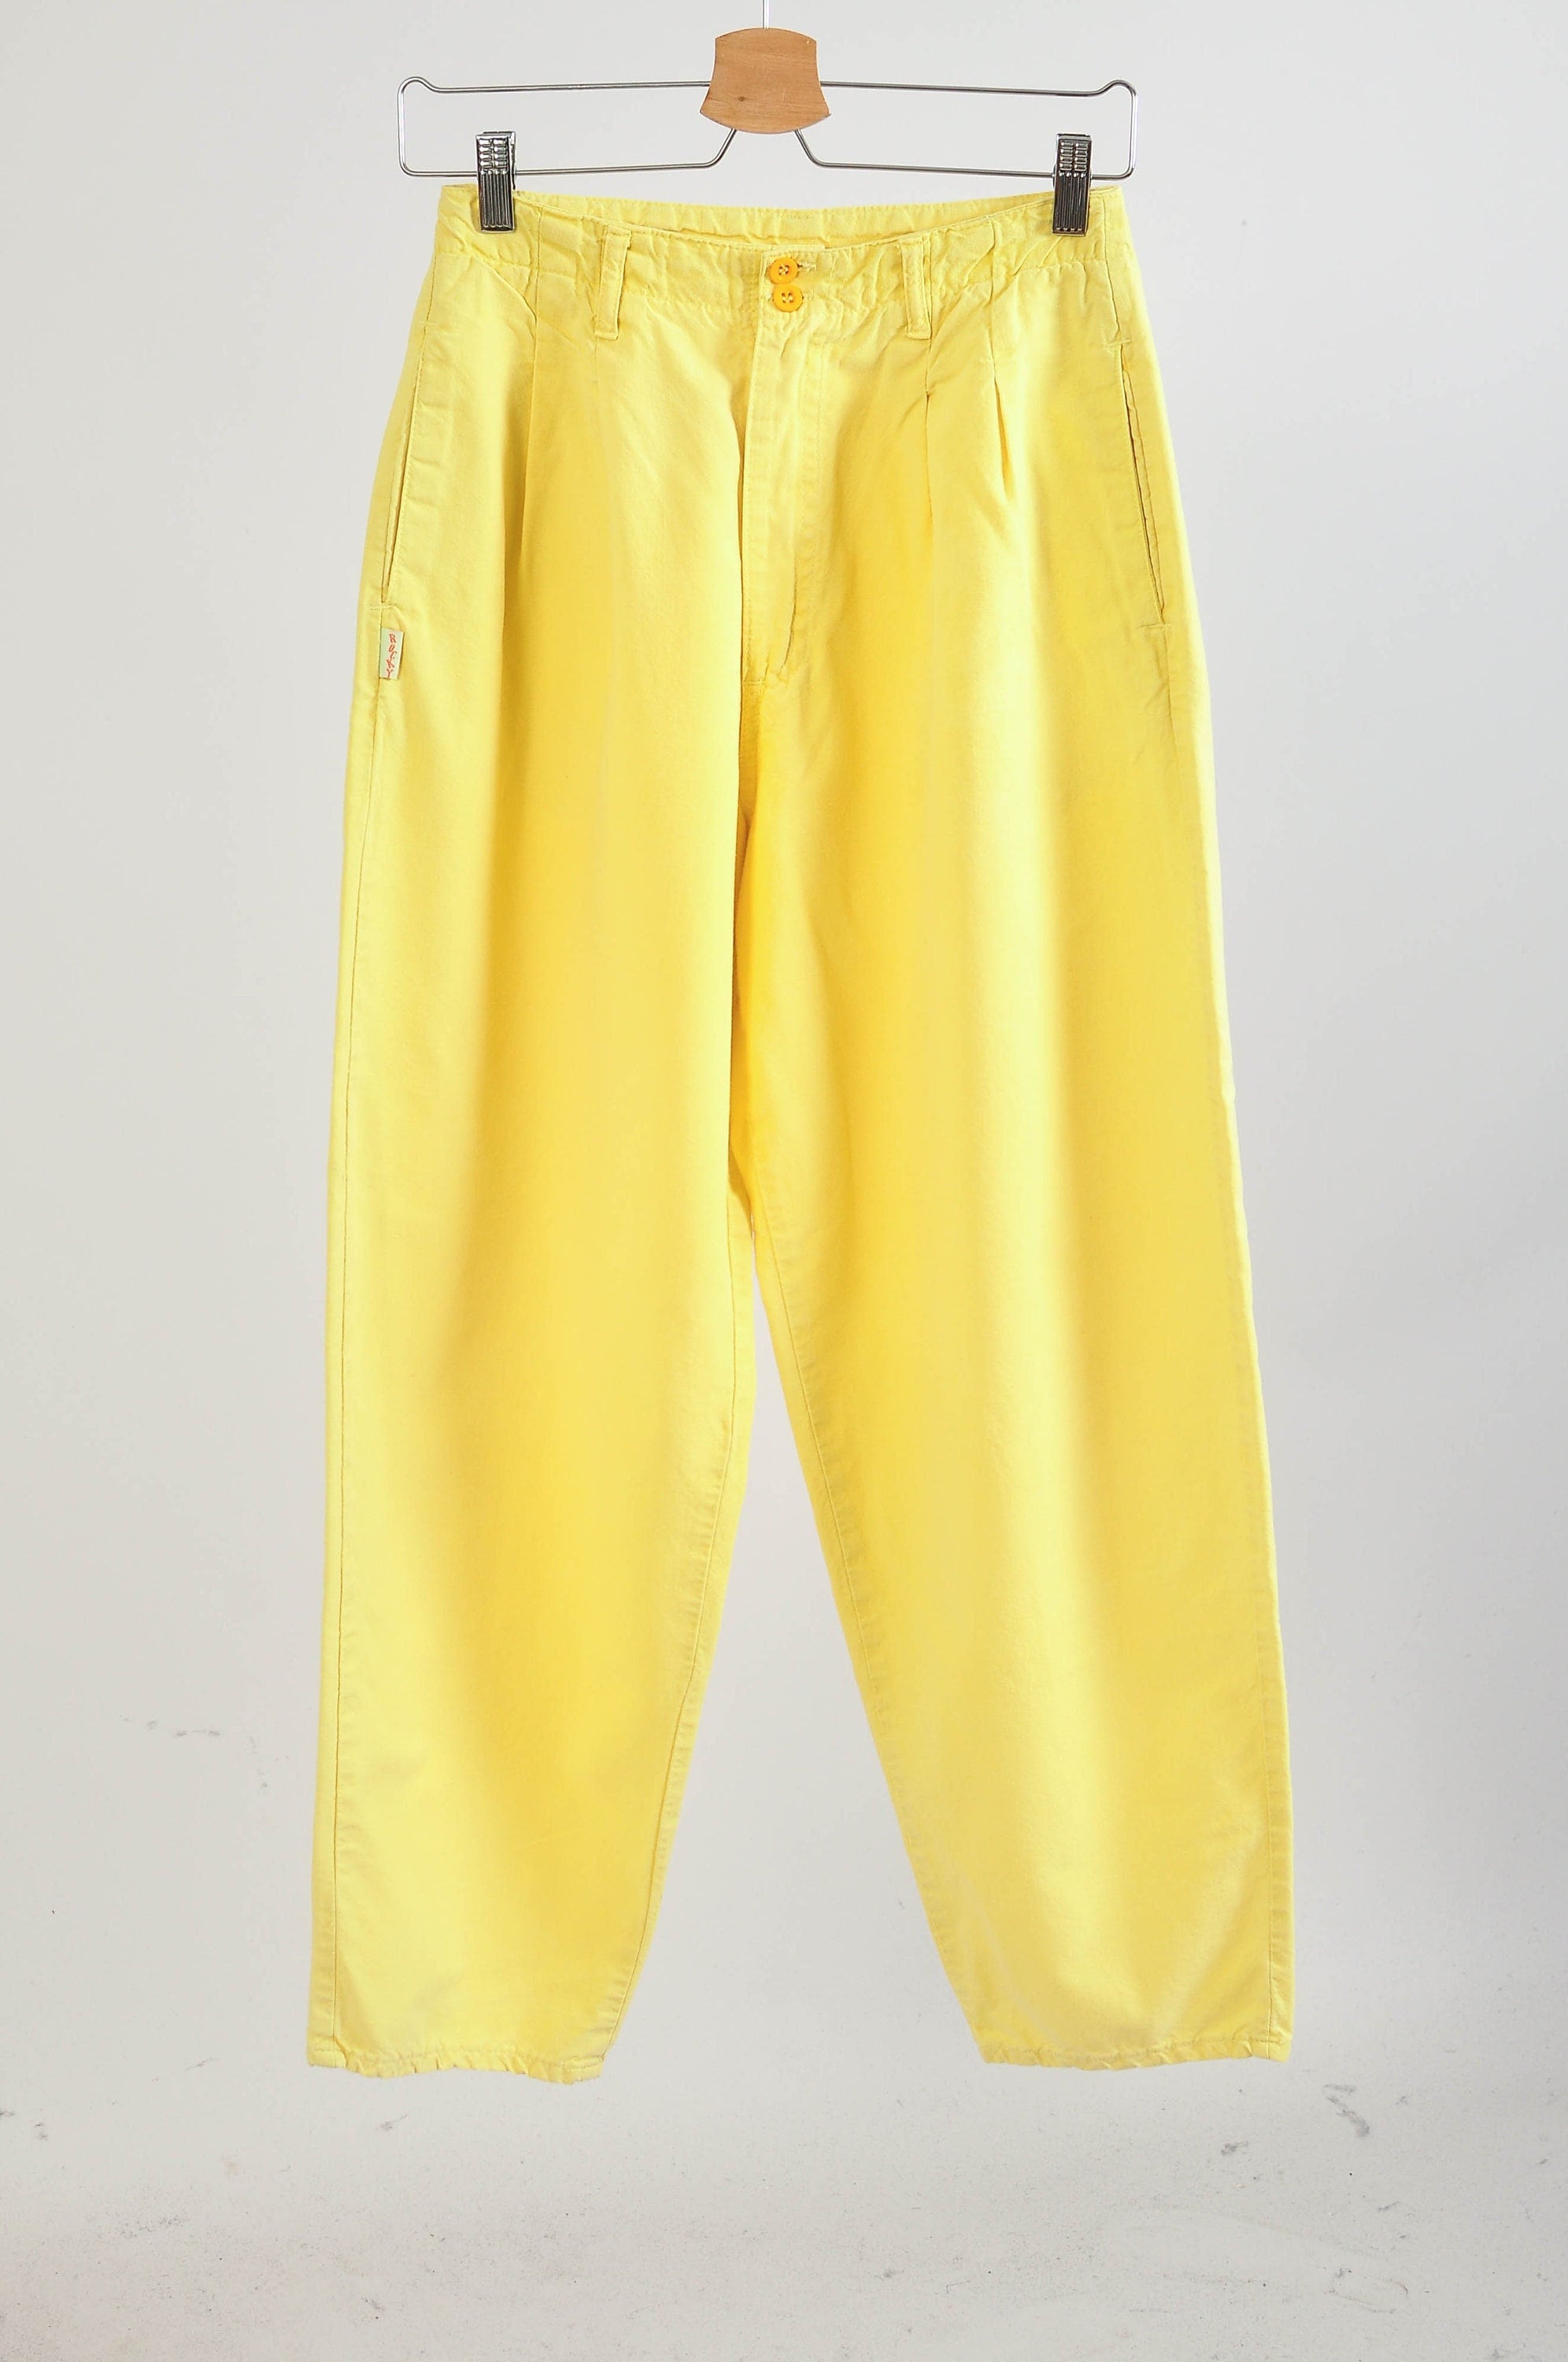 Yellow Cotton Sweatpants, Yellow Velour Pants Men Women, Baggy